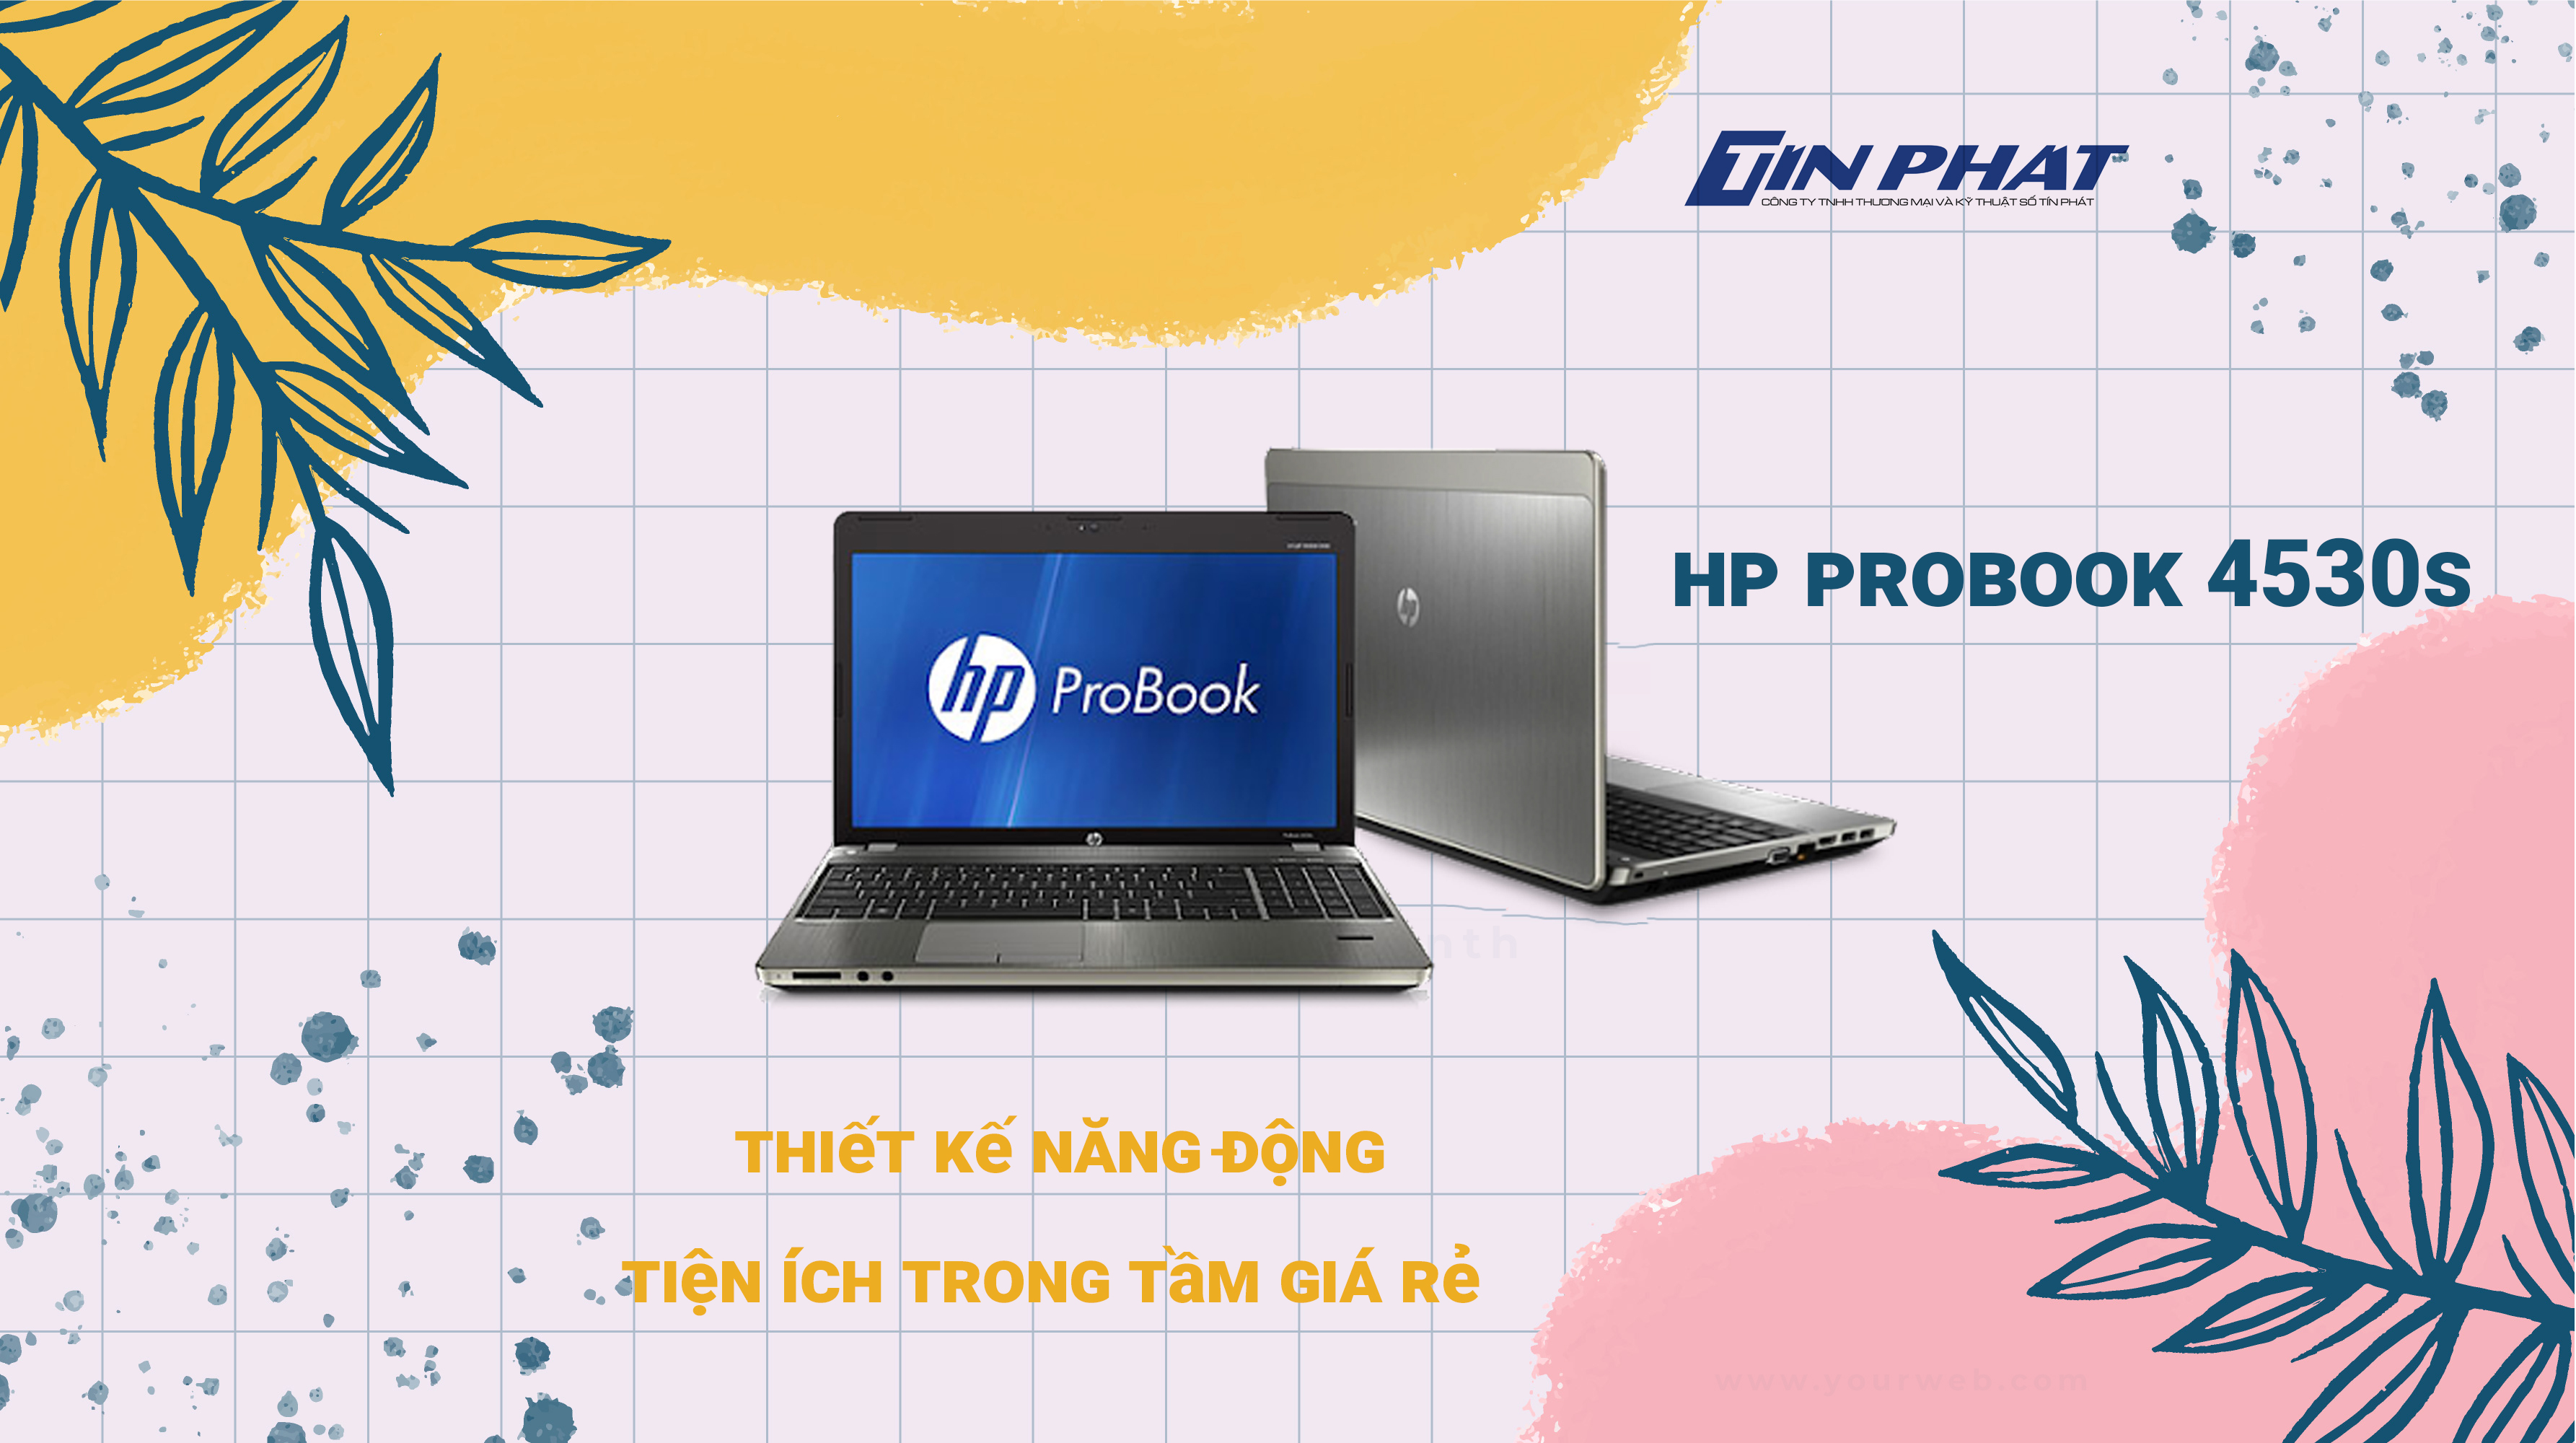 Đánh giá HP ProBook 4530S Laptop thiết kế năng động, tiện ích trong tầm giá rẻ 